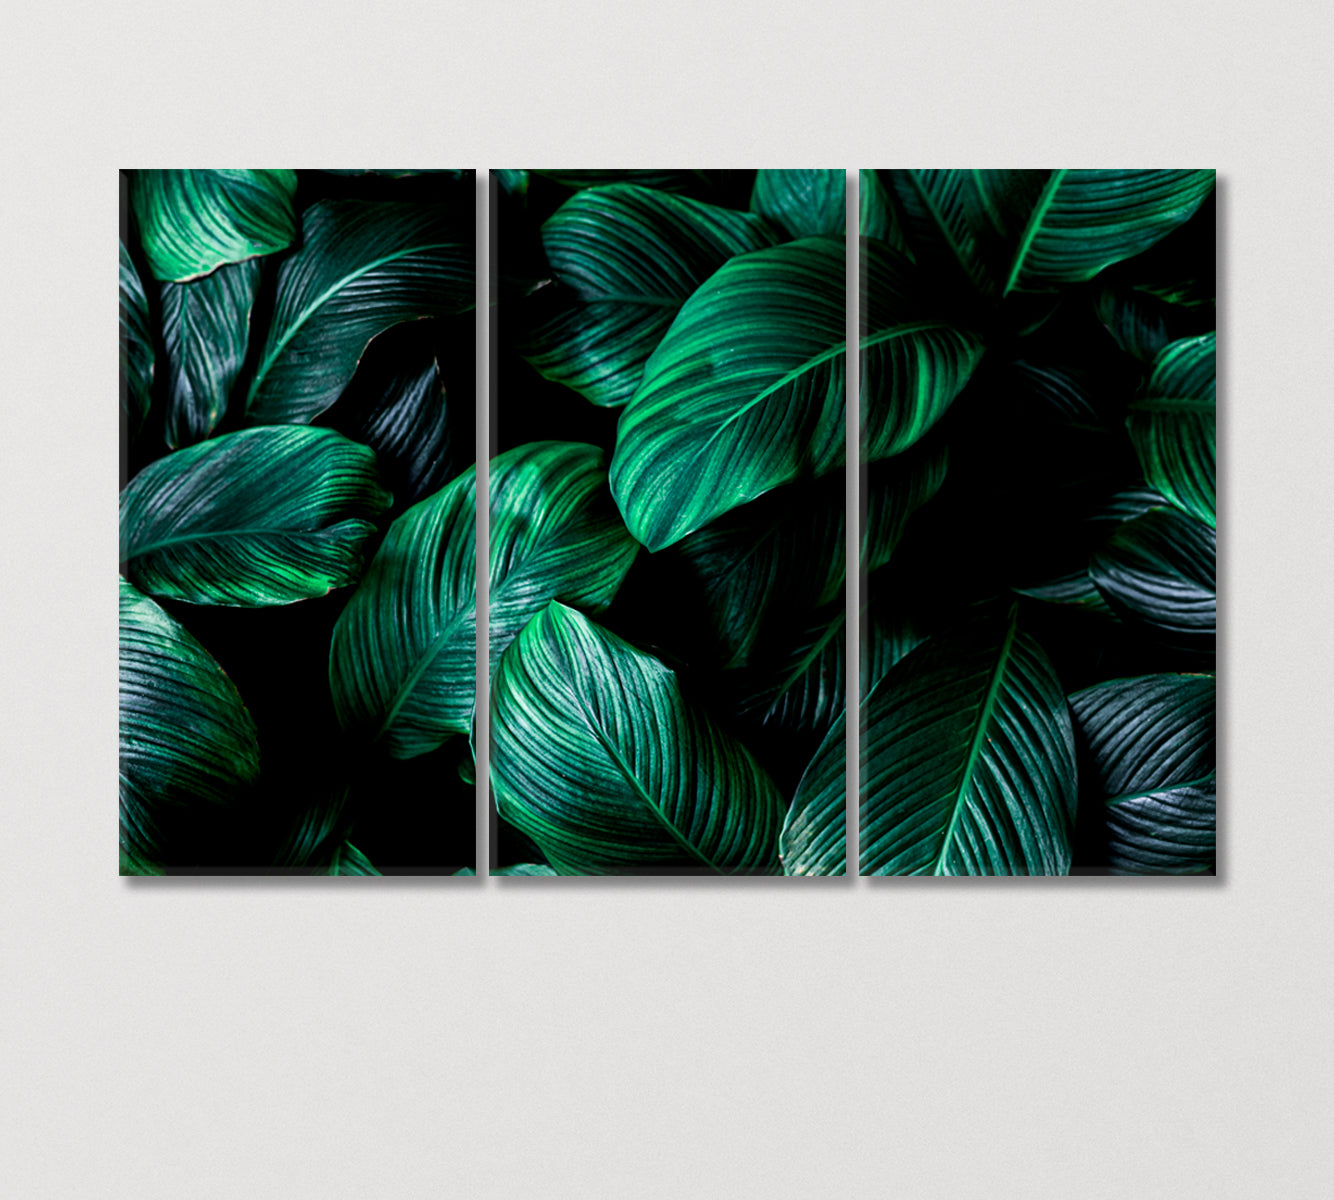 Big Green Tropical Leaf Canvas Print-Canvas Print-CetArt-3 Panels-36x24 inches-CetArt